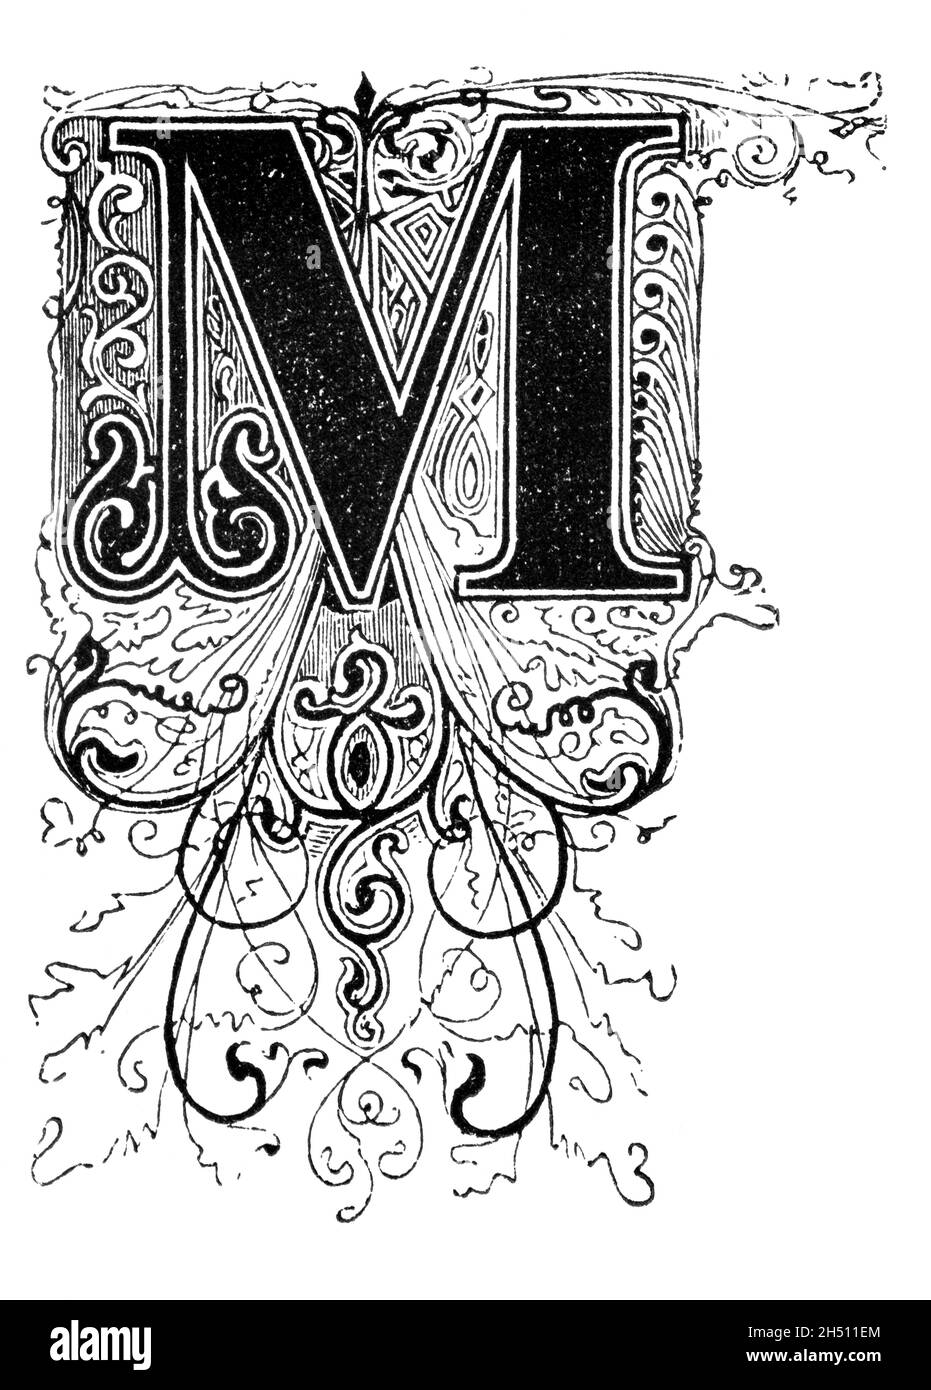 Lettre M ornée de décorations en forme de capitale, avec décoration ou ornement à motif floral.Ancien dessin antique Banque D'Images